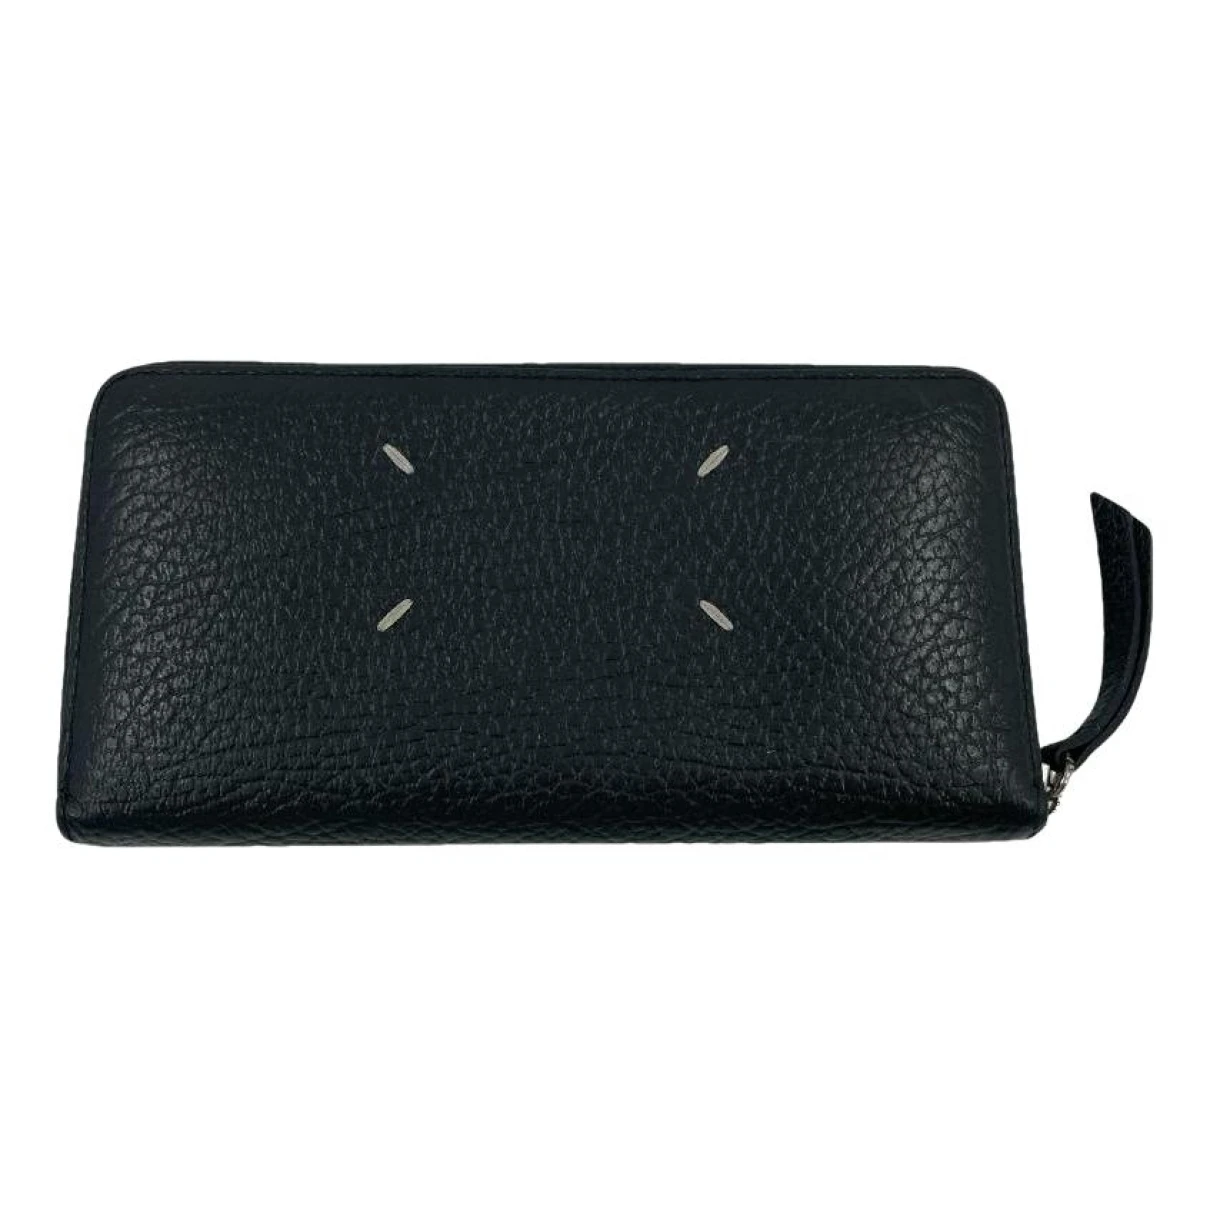 Pre-owned Maison Margiela X Reebok Leather Wallet In Black